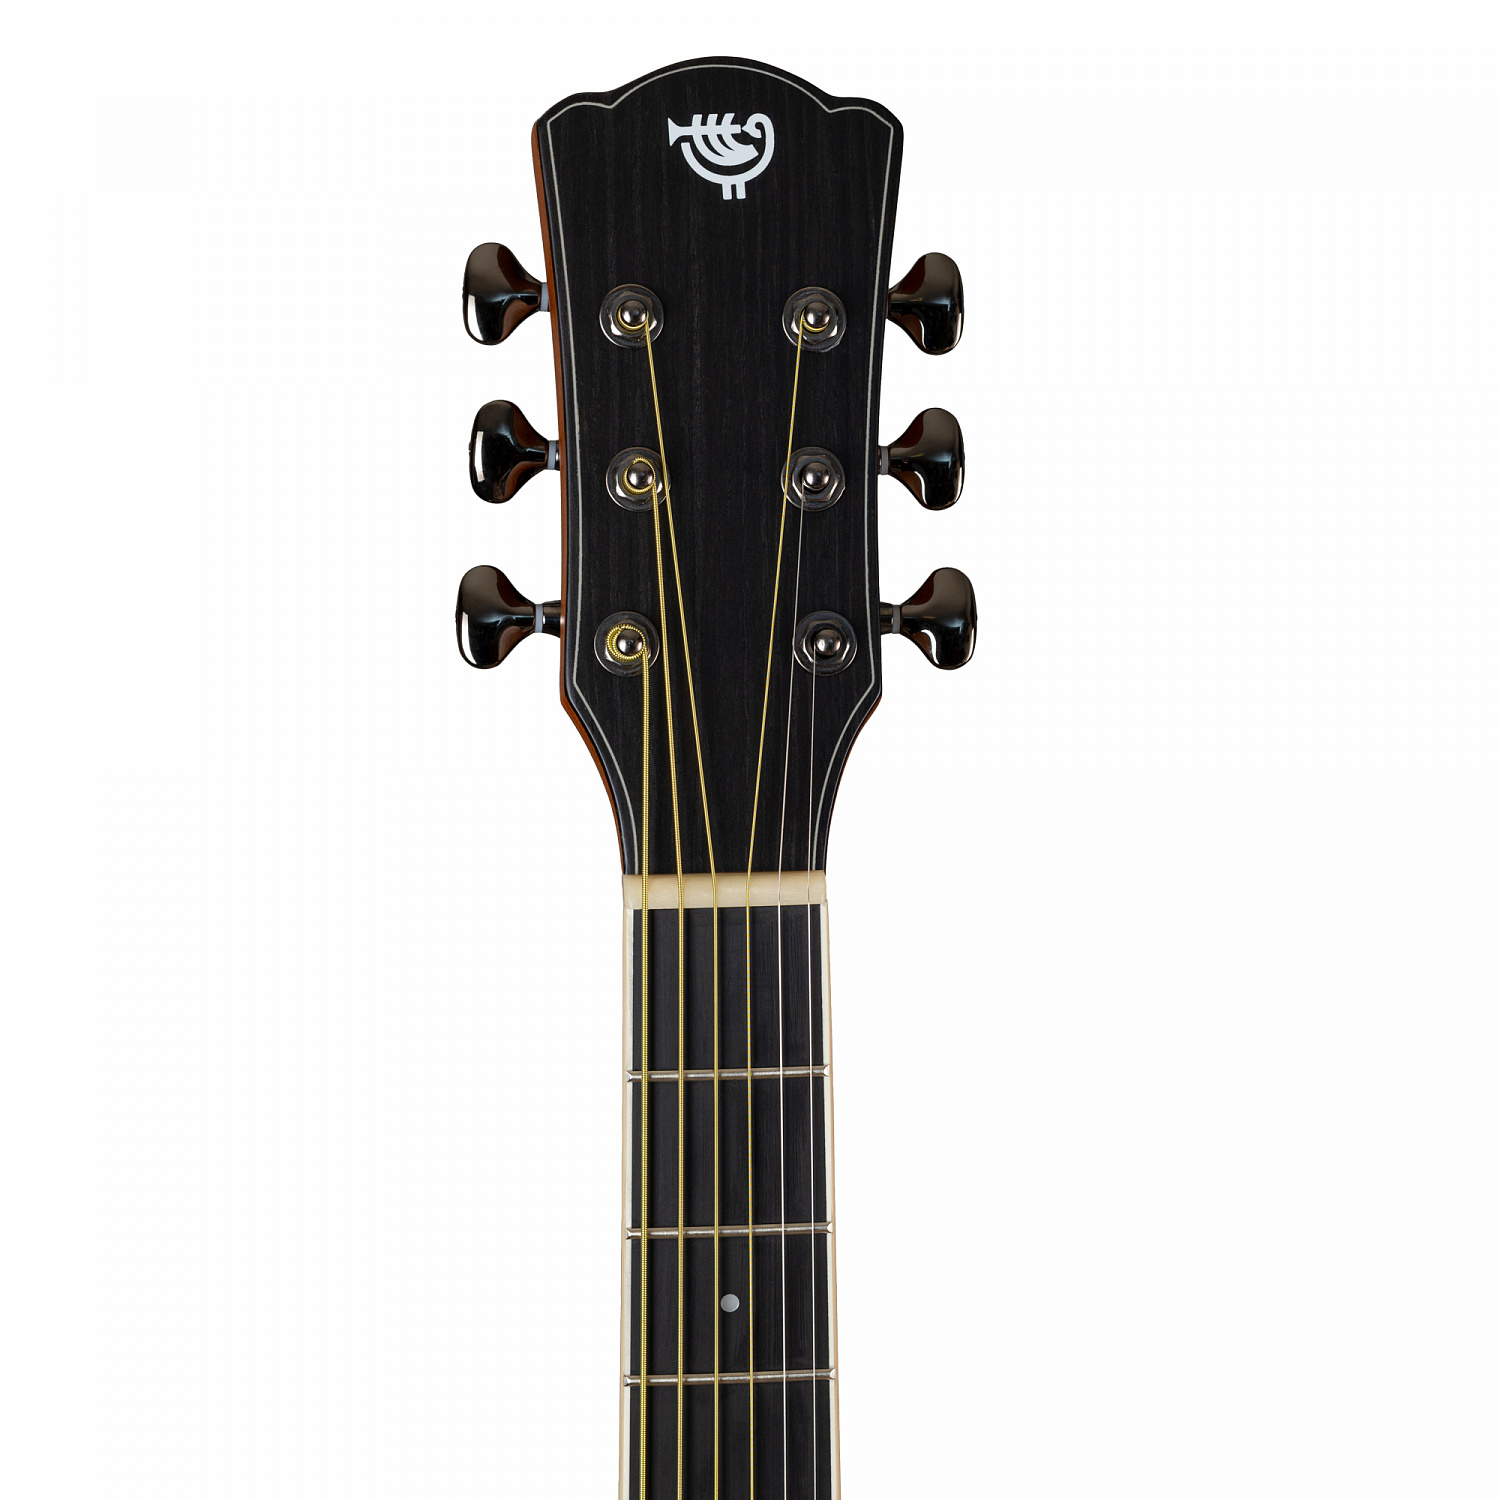 Rockdale Aurora D10 С Nat Solid акустическая гитара дредноут с вырезом, цвет натуральный, глянцевое покрытие